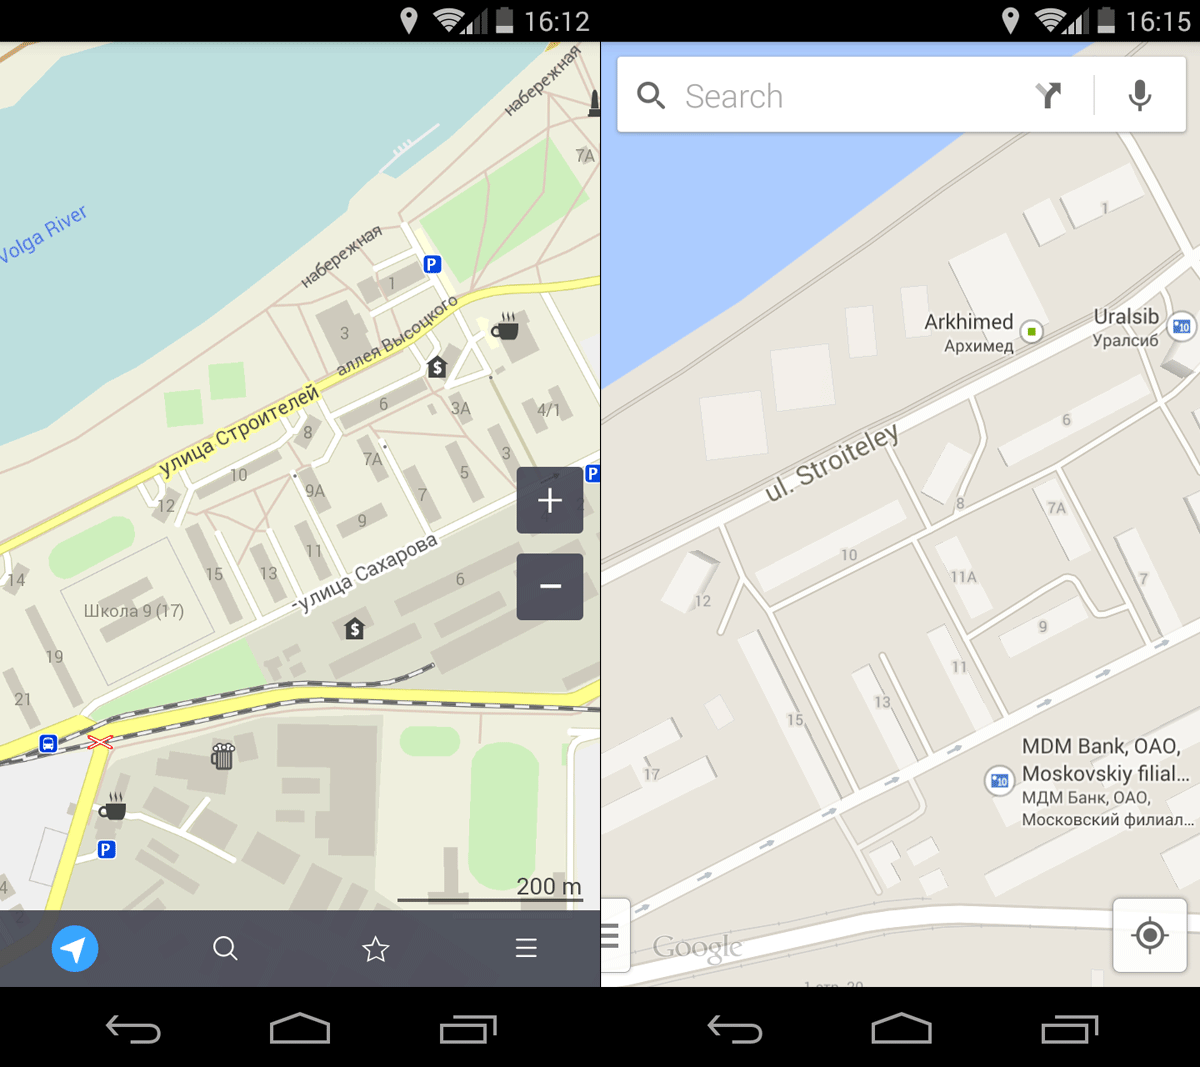 Приложение MapsWithMe получило новое название MAPS.ME и научилось поиску без интернета